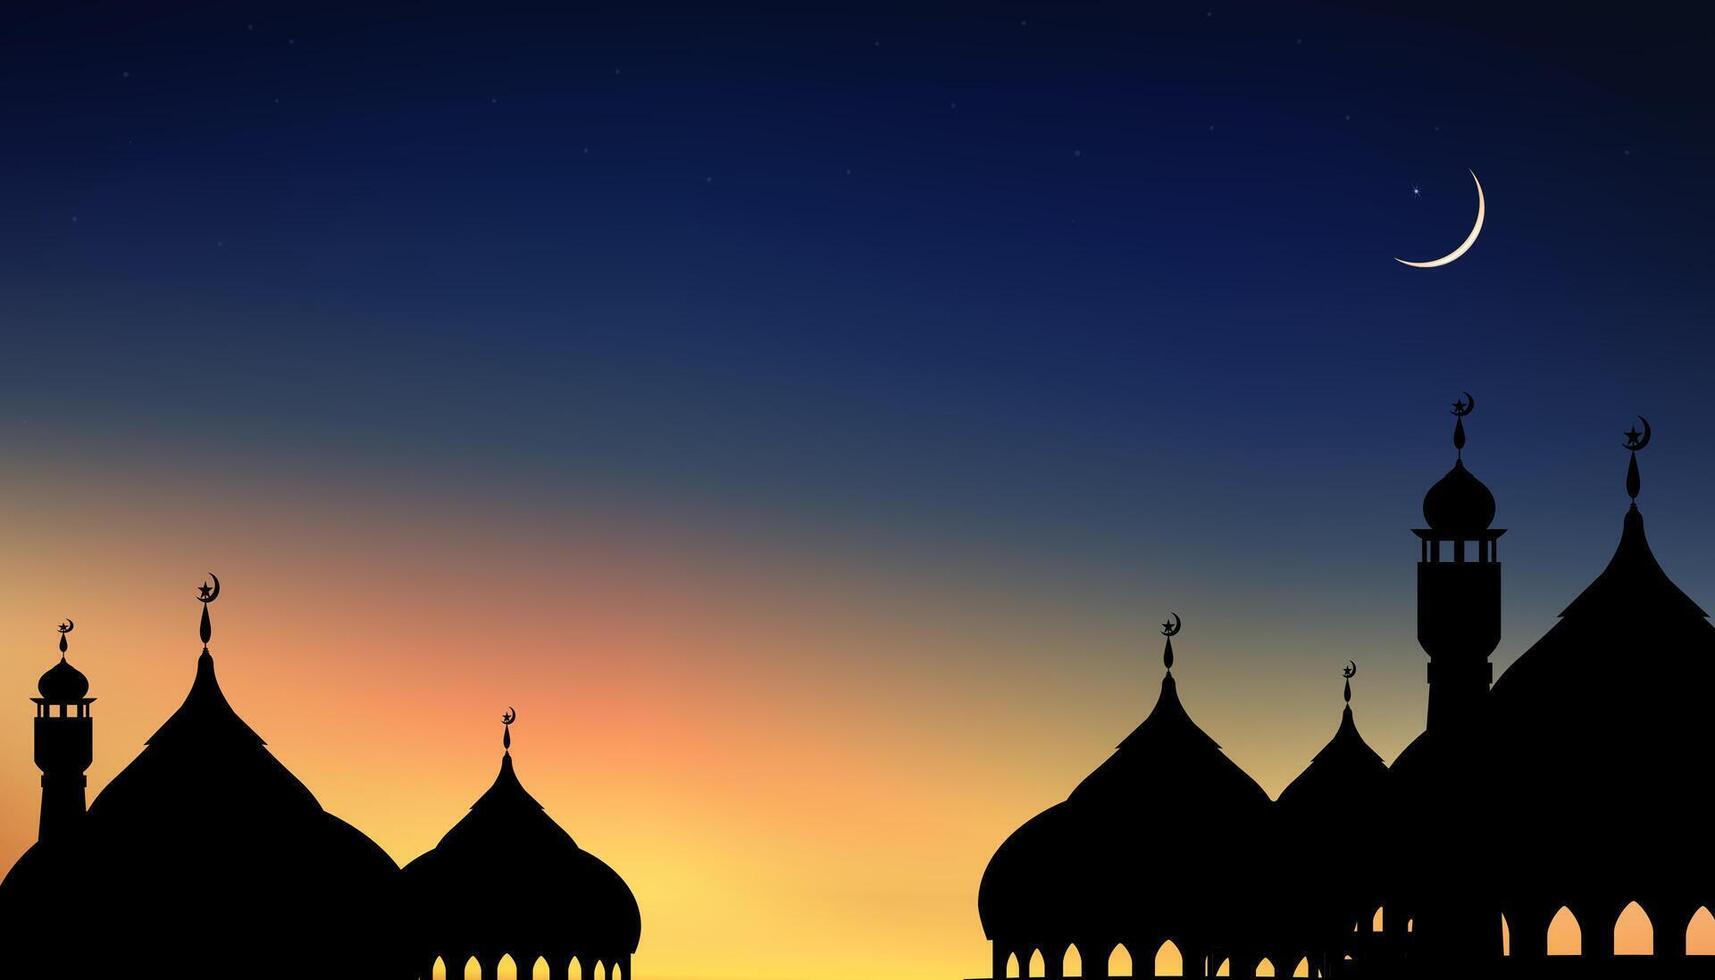 islamisch Hintergrund, Kuppel Moscheen, Halbmond Mond, sternenklar auf dunkel Blau Himmel Hintergrund, Vektor Symbol islamisch Religion mit Dämmerung Himmel, Banner eid al adha, eid al Fitr, Mubarak, neu Jahr Muharram, Ramadan kareem